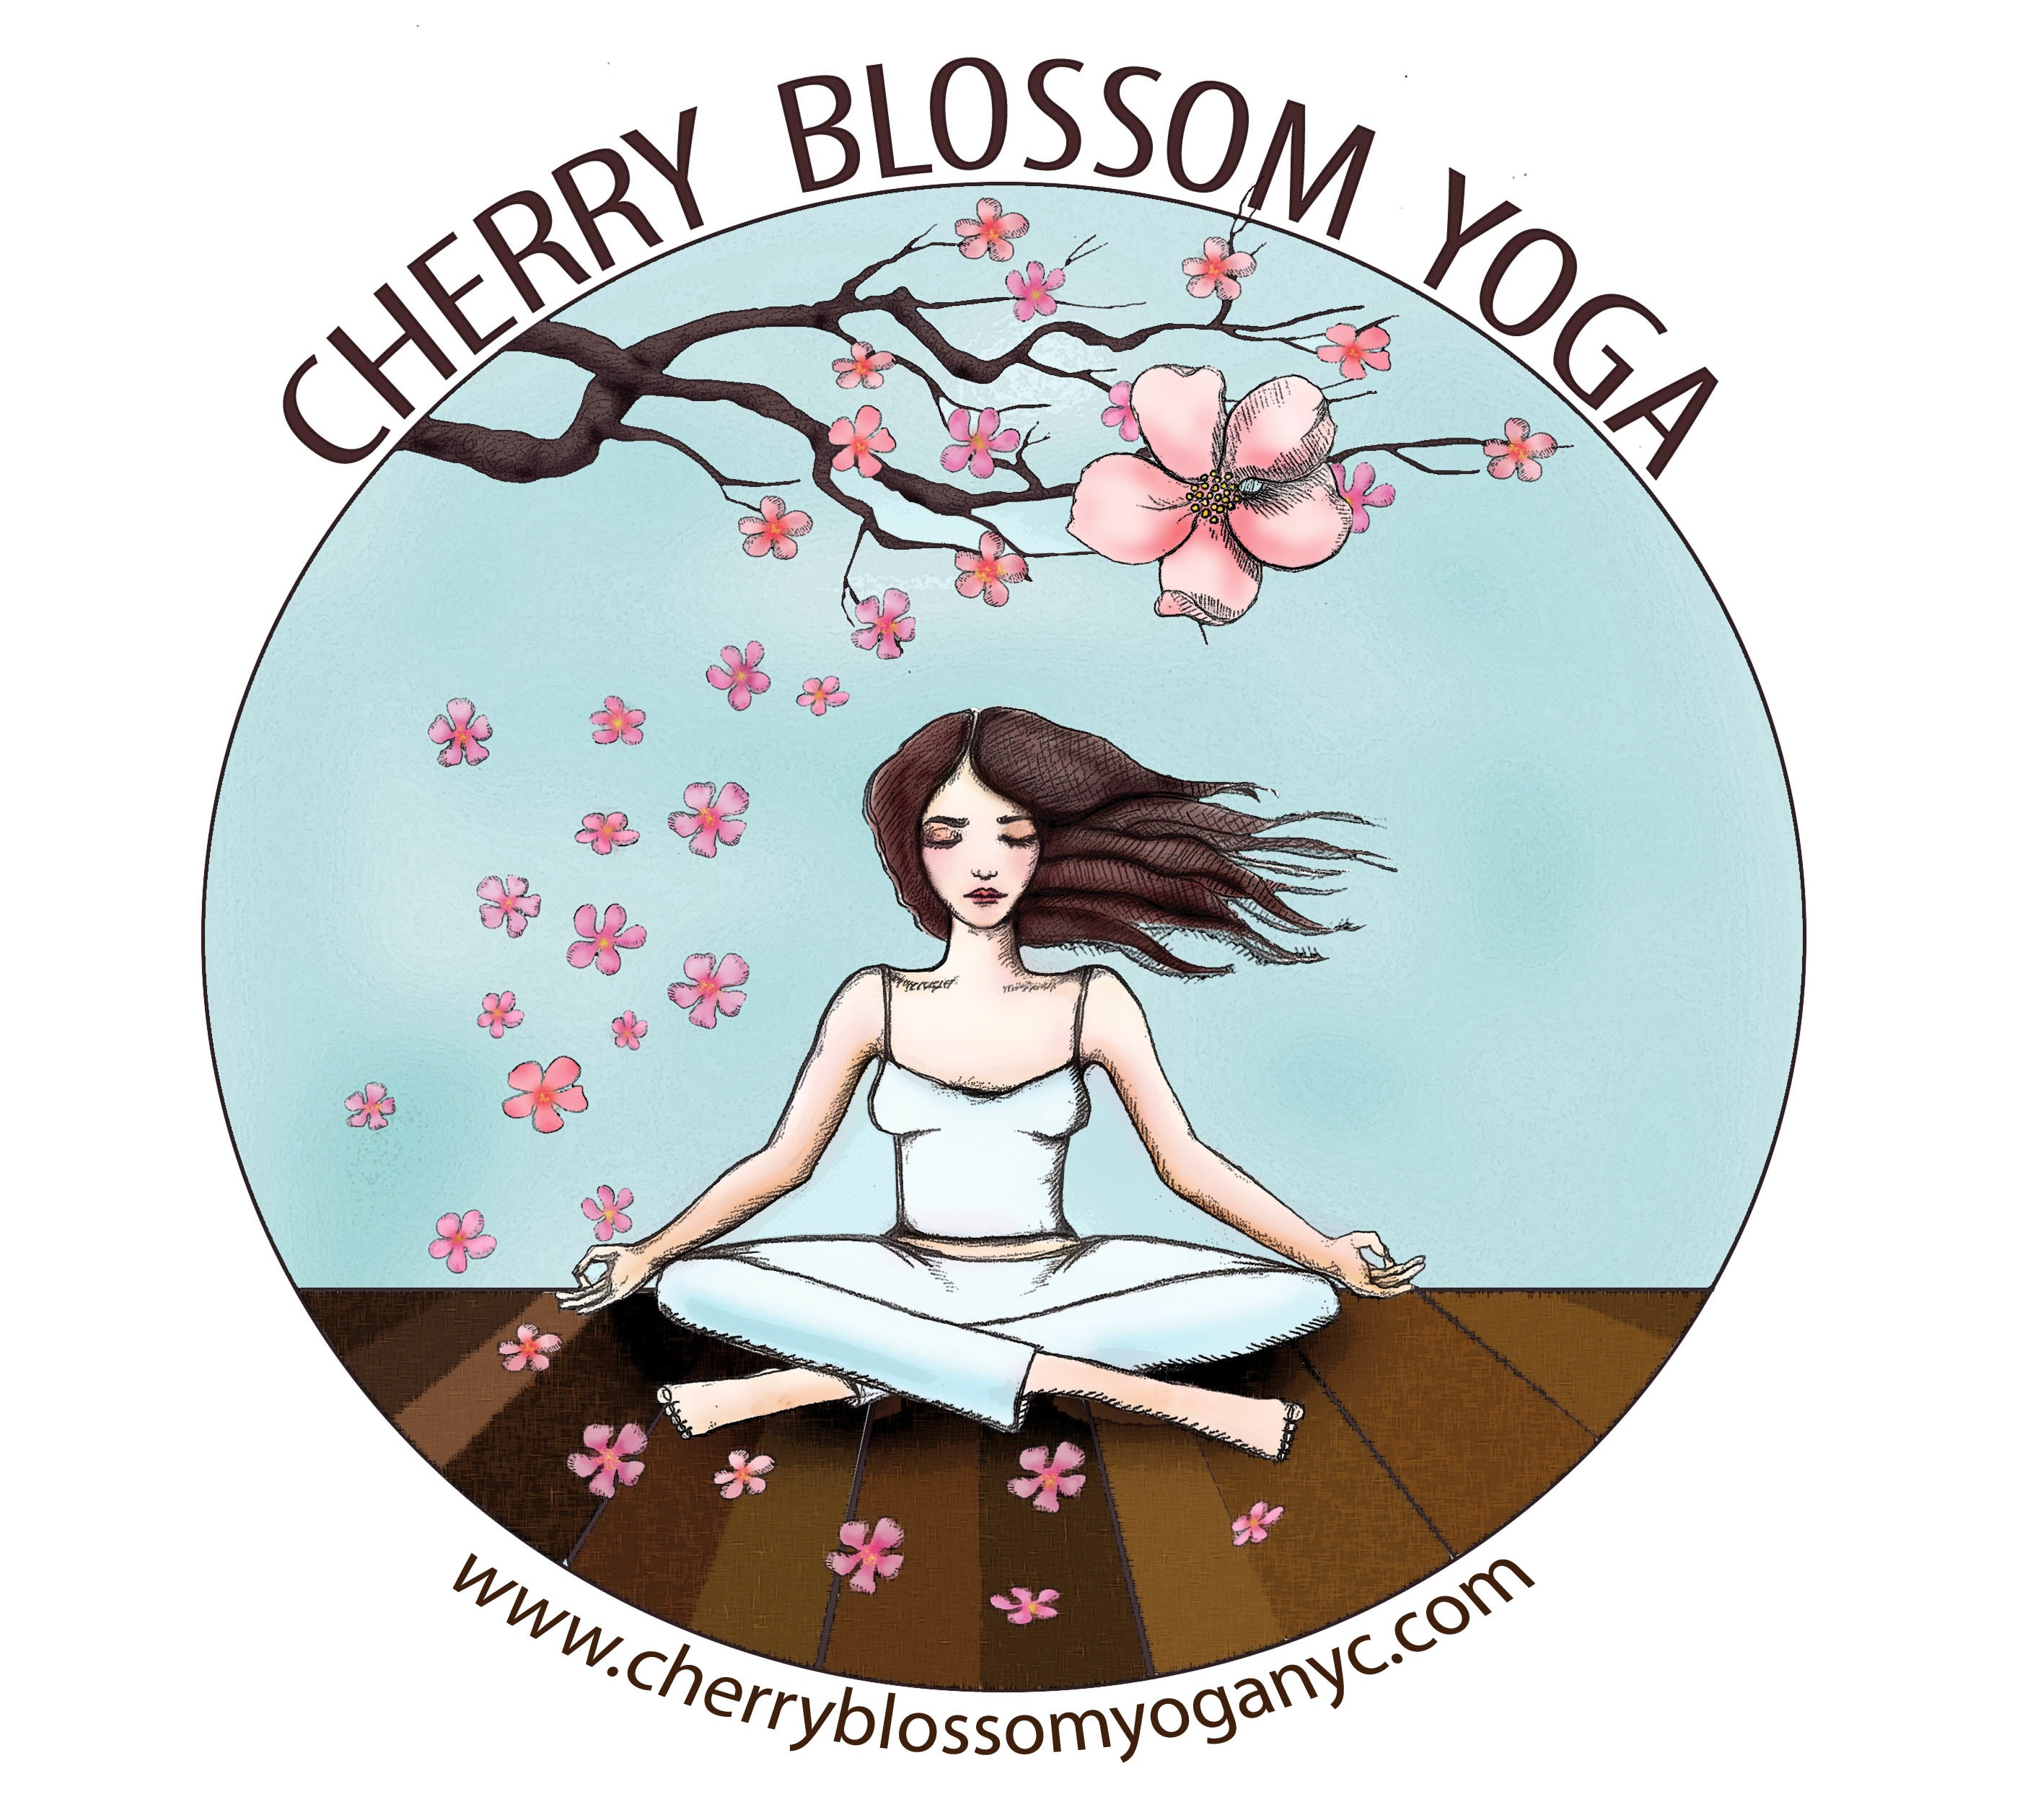 Cherry Blossom Yoga